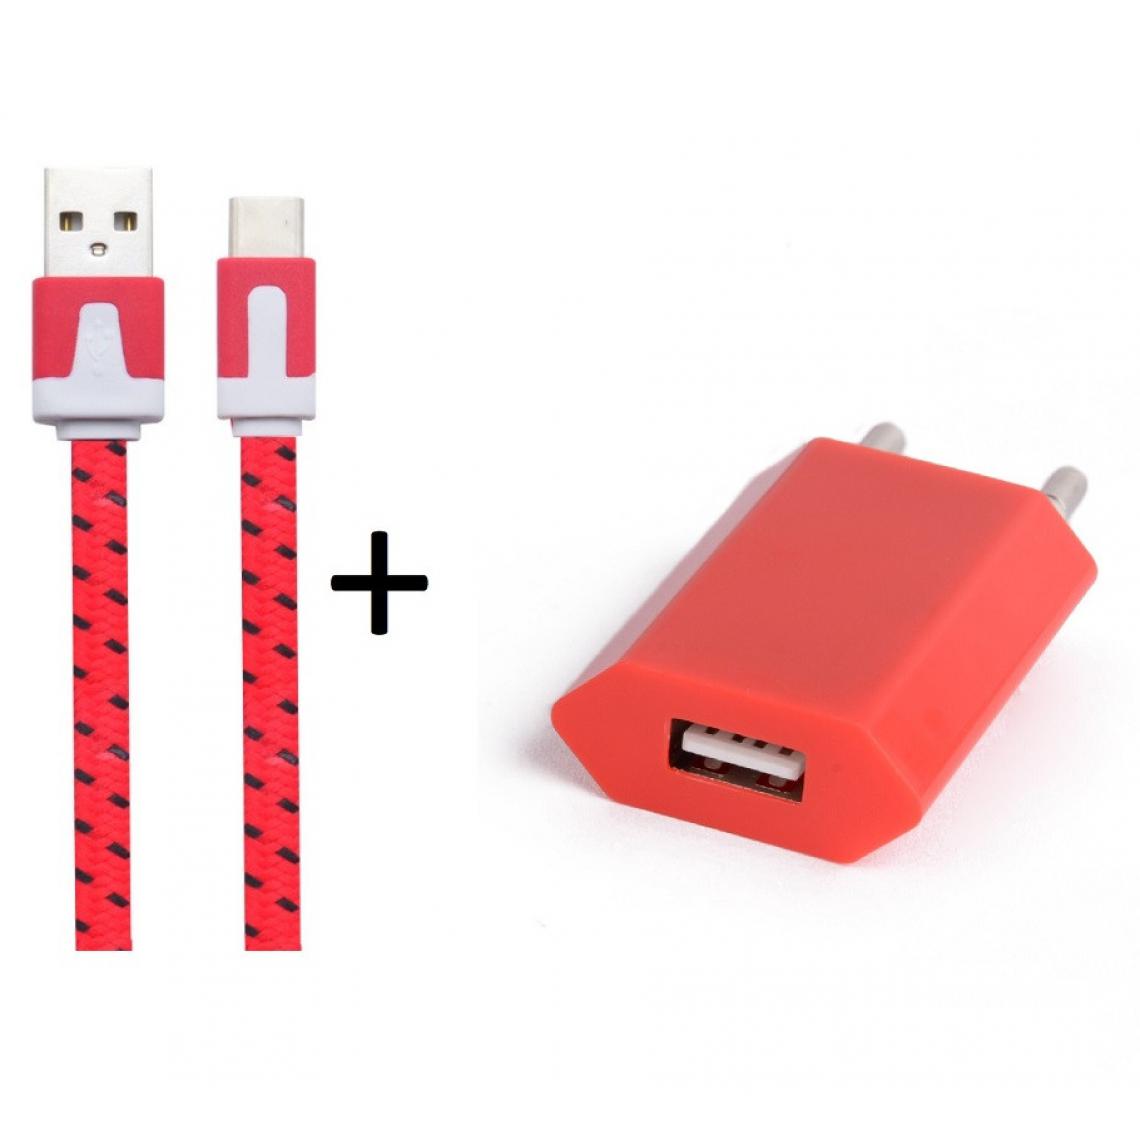 Shot - Pack Chargeur pour SONY Xperia L4 Smartphone Type C (Cable Noodle 1m Chargeur + Prise Secteur USB) Murale Android (ROUGE) - Chargeur secteur téléphone